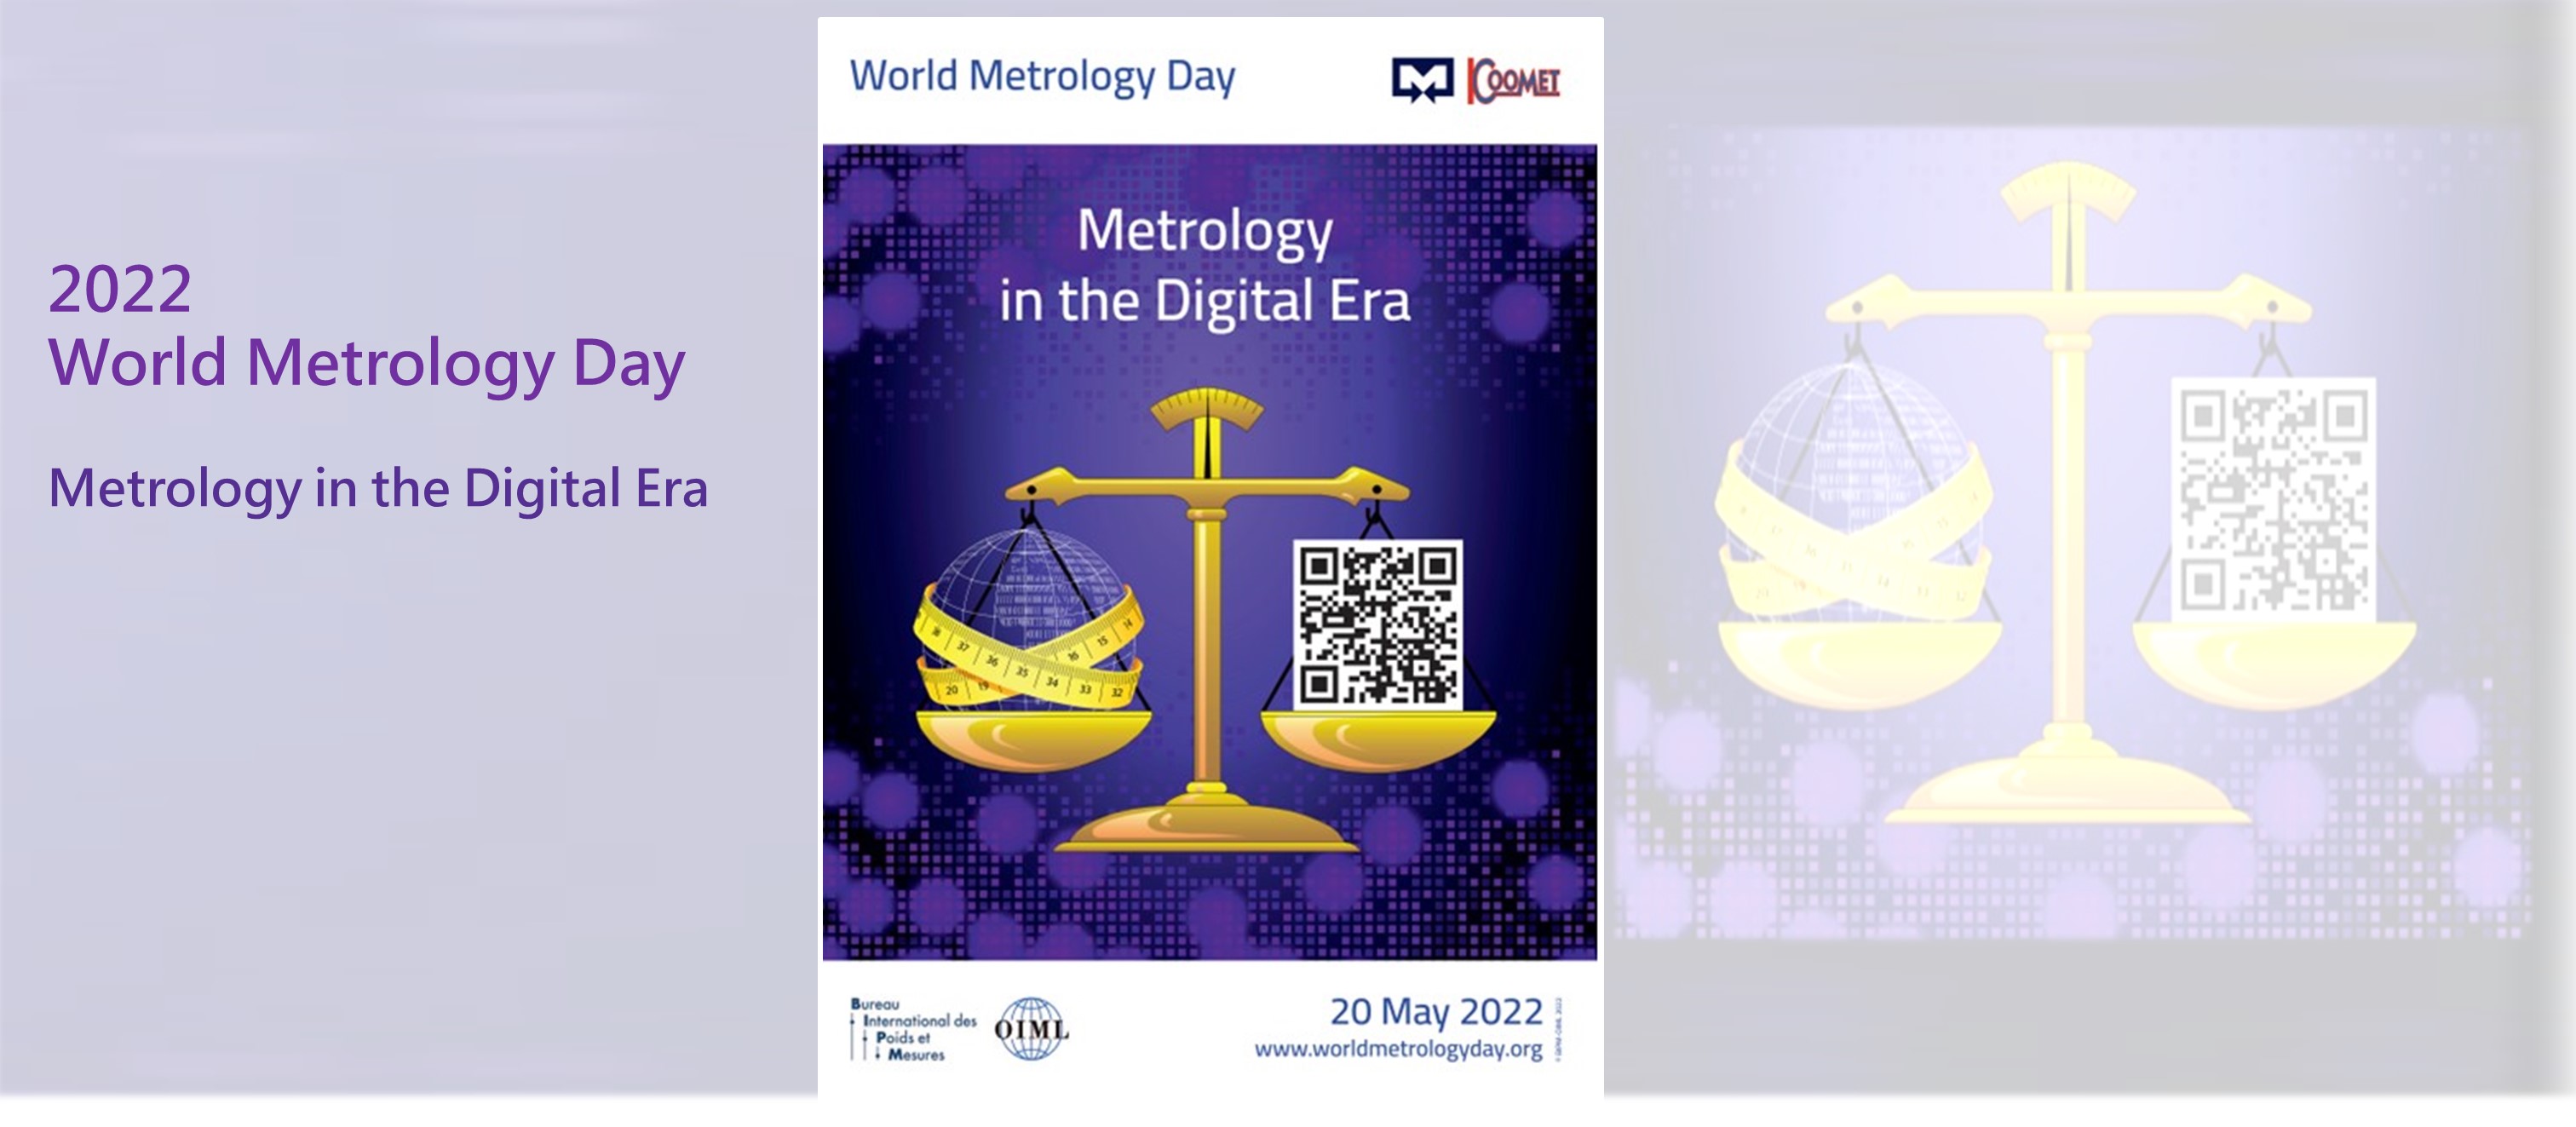 2022 World Metrology Day